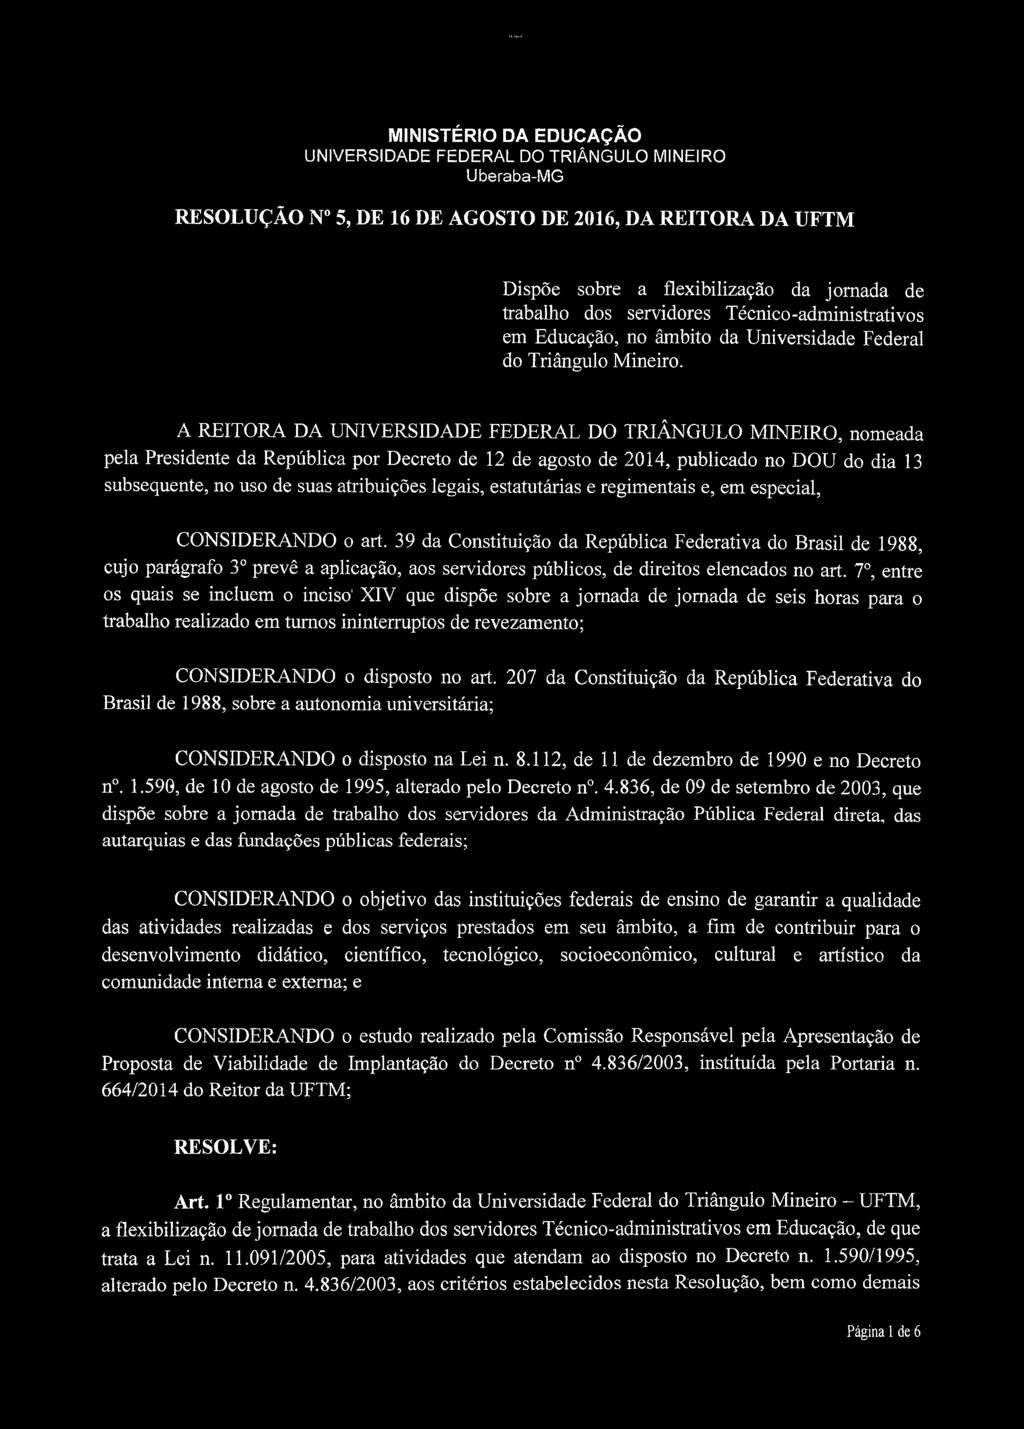 A REITORA DA, nomeada pela Presidente da República por Decreto de 12 de agosto de 2014, publicado no DOU do dia 13 subsequente, no uso de suas atribuições legais, estatutárias e regimentais e, em